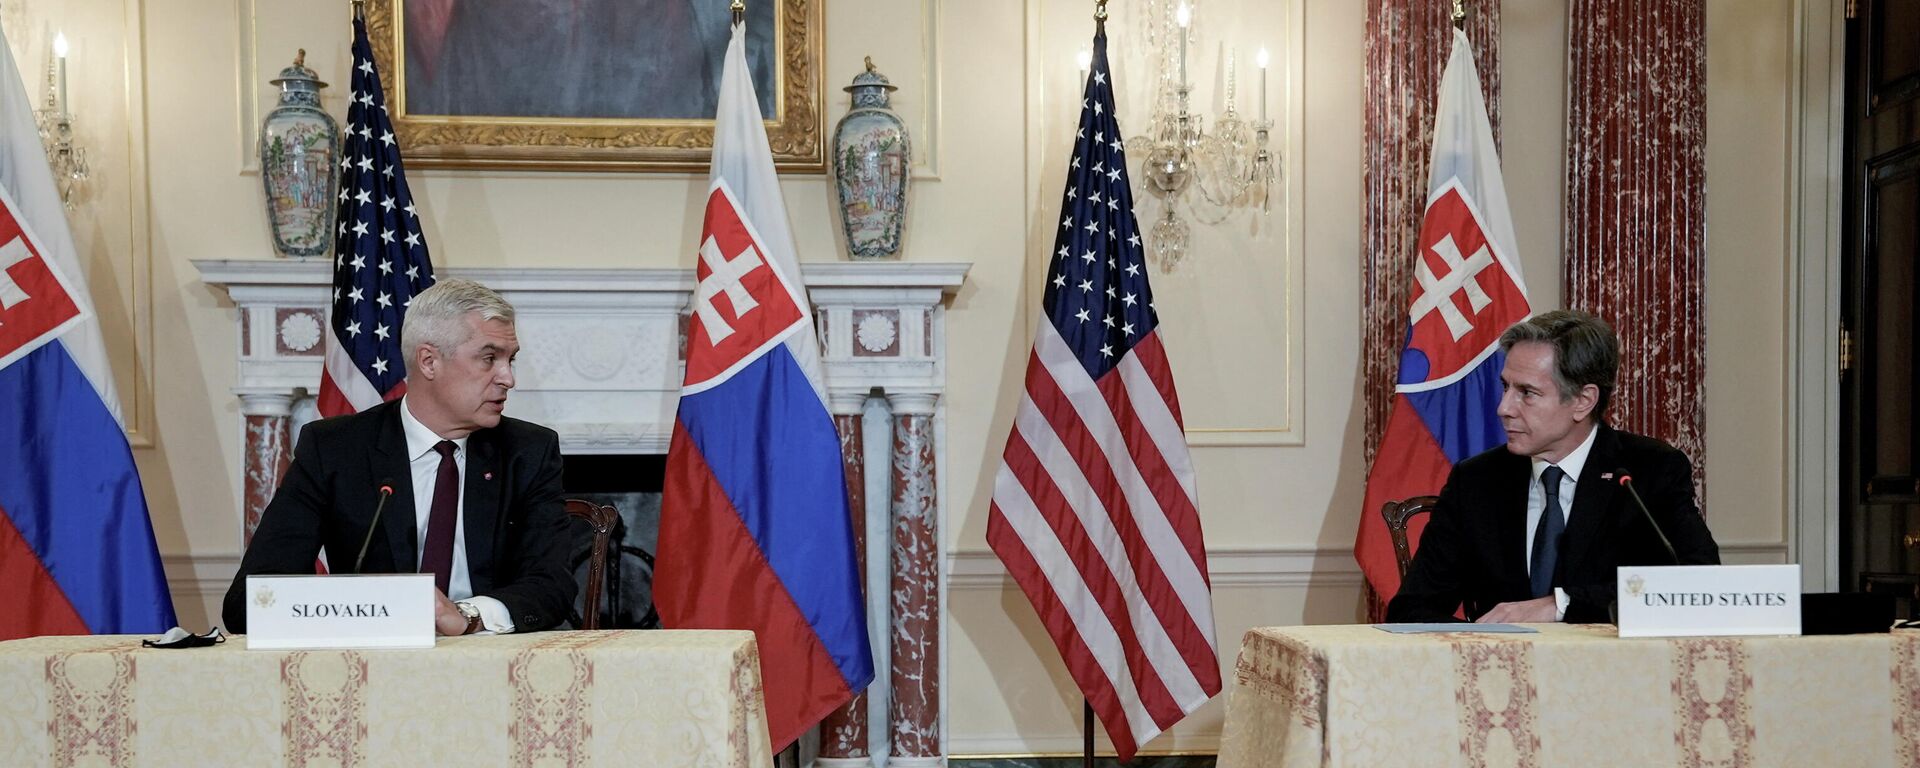 Em Washington, o ministro das Relações Exteriores da Eslováquia, Ivan Korcok (à esquerda), participa de cerimônia ao lado do secretário de Estado dos EUA, Antony Blinken (à direita), em 3 de fevereiro de 2022 - Sputnik Brasil, 1920, 04.02.2022